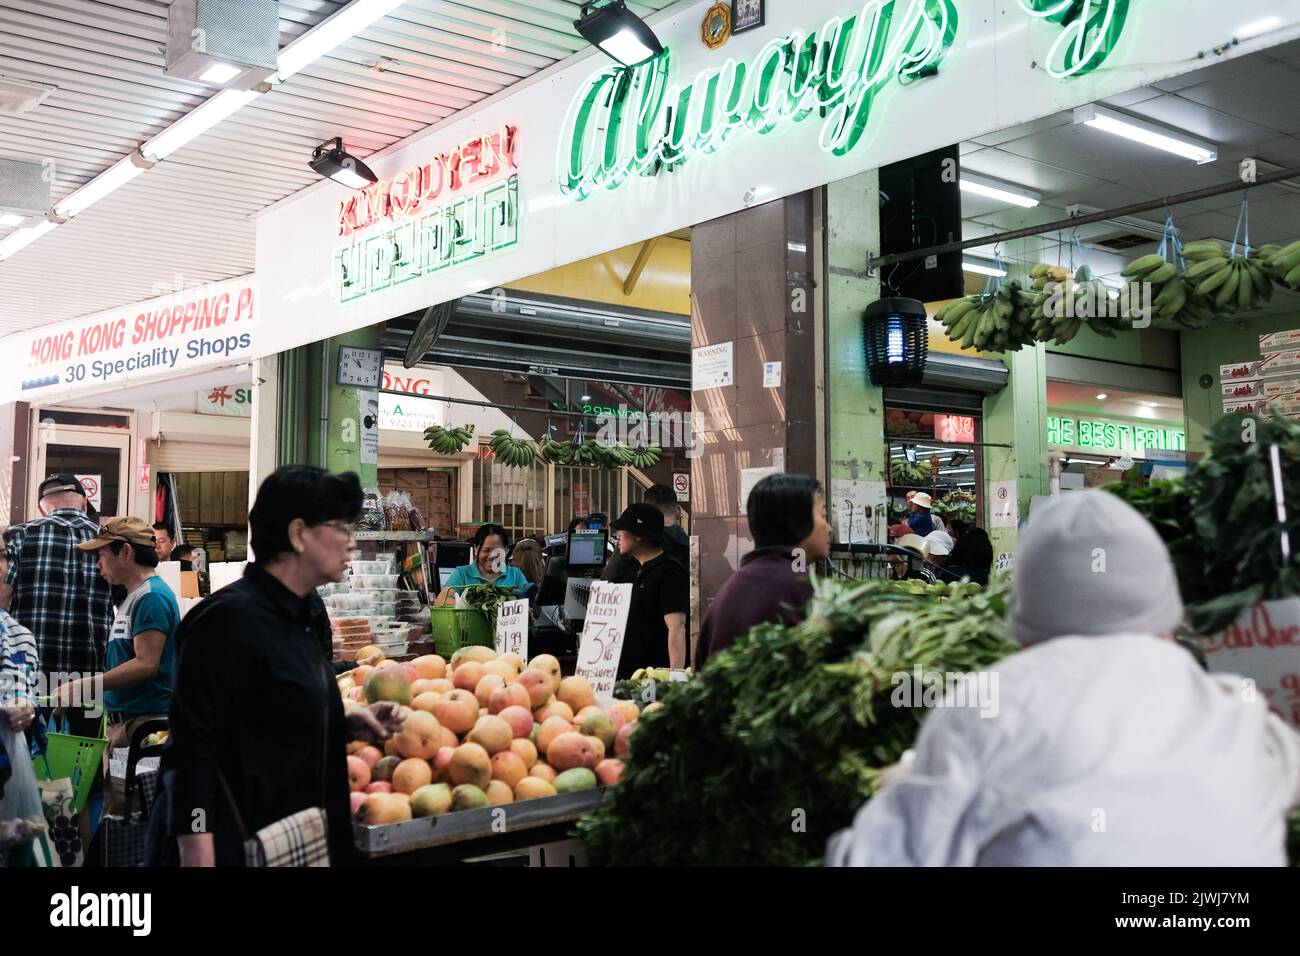 Drogheria vietnamita che vende frutta e verdura fresca all'interno di una galleria di negozi a Cabramatta, Sydney, Australia Foto Stock